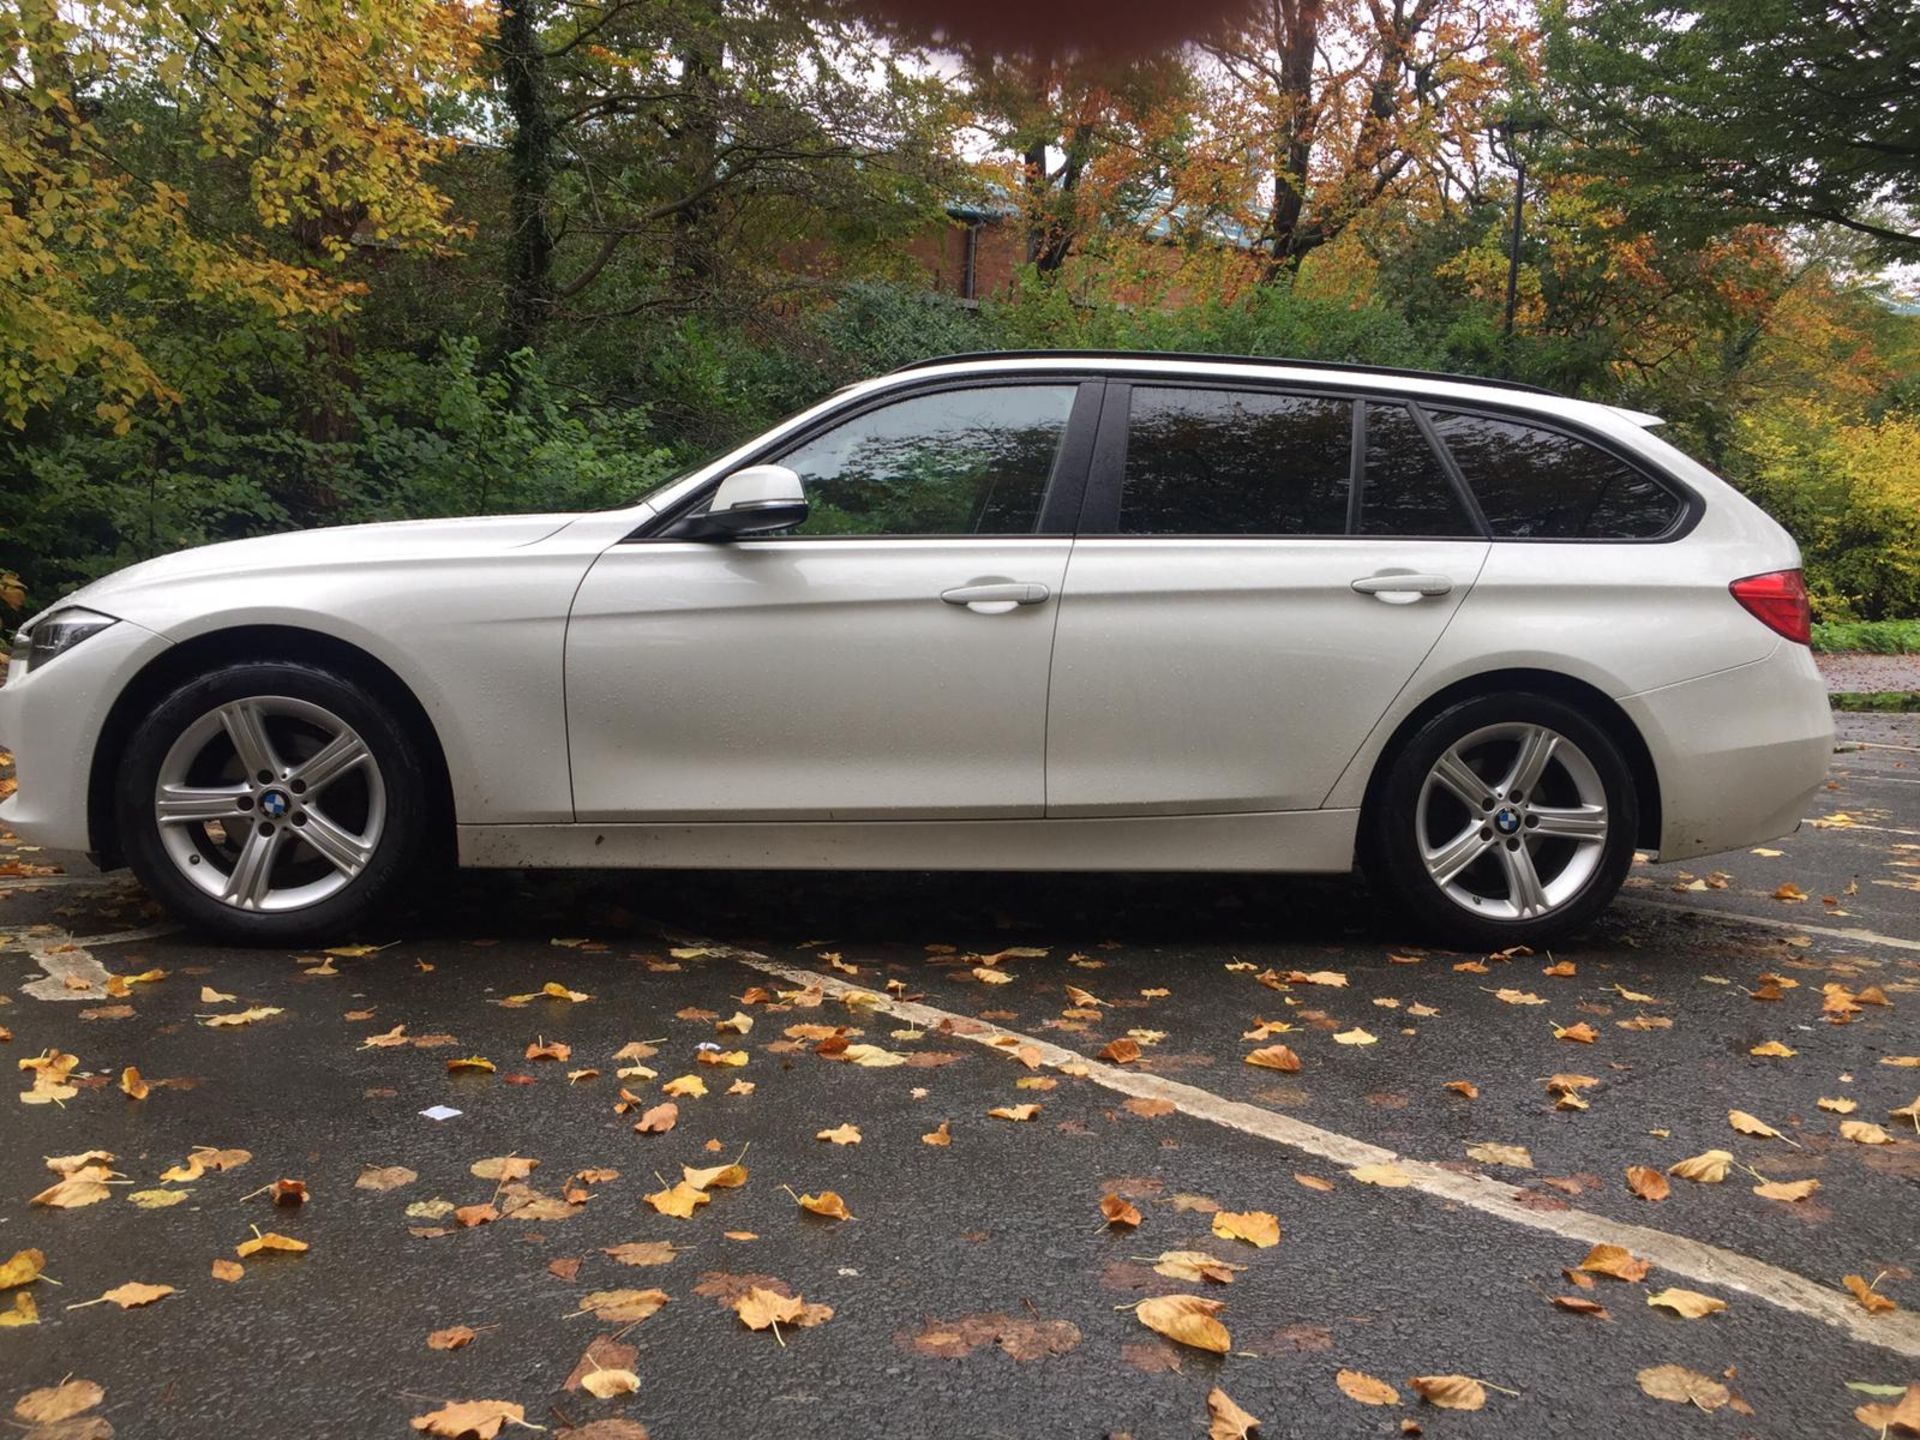 2015/64 REG BMW 316D SE AUTOMATIC 2.0 DIESEL WHITE ESTATE, SHOWING 1 FORMER KEEPER *NO VAT* - Image 4 of 9